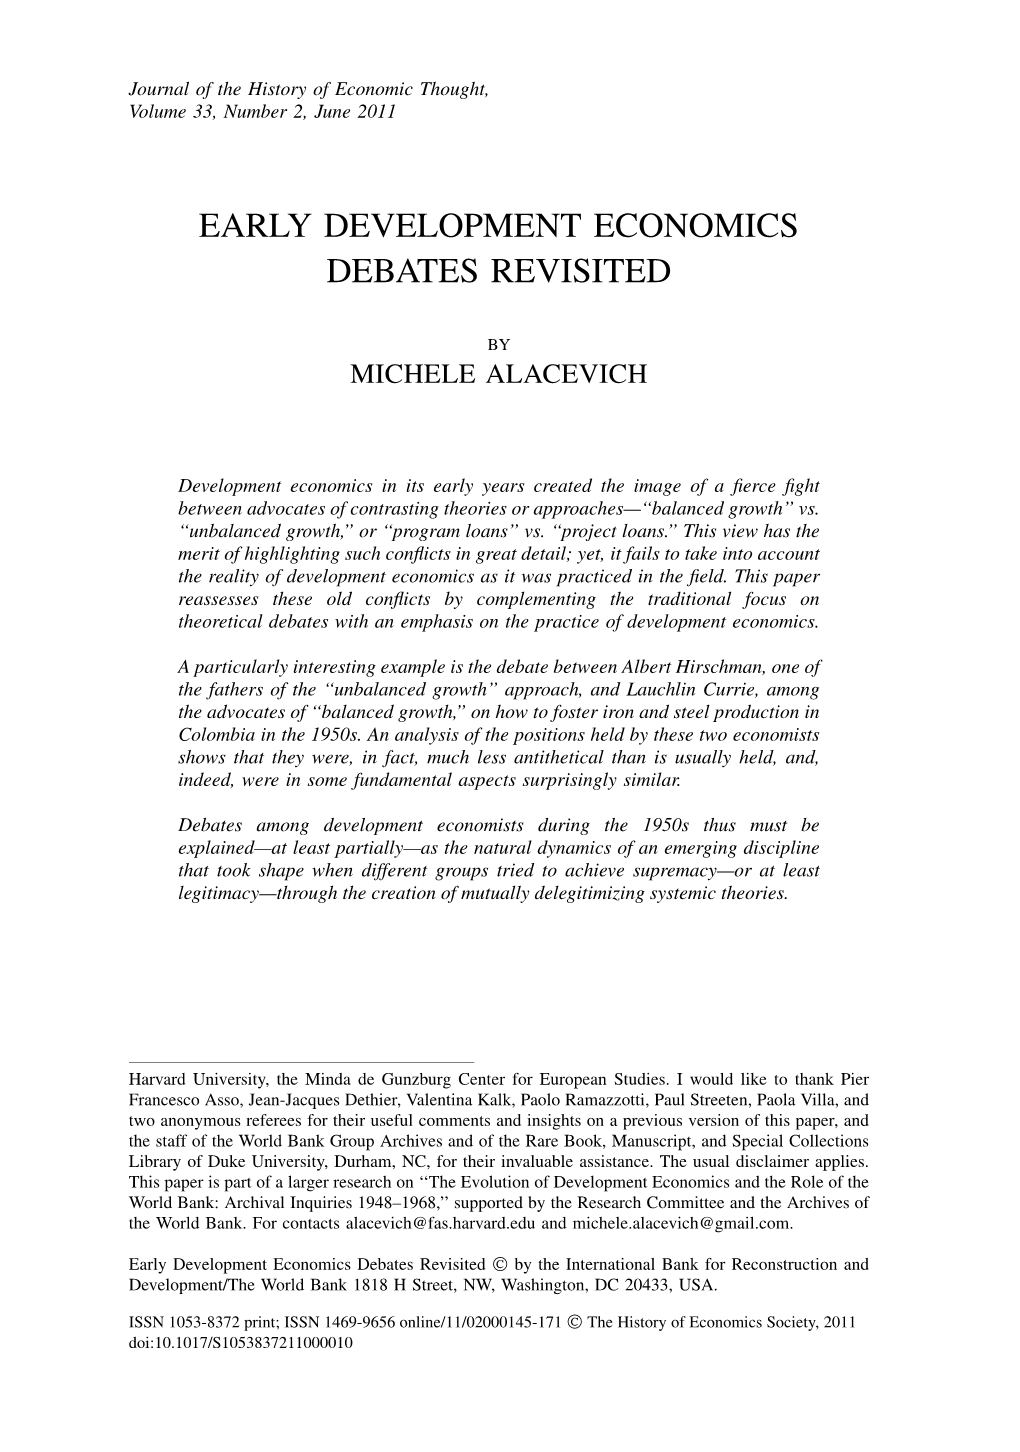 Early Development Economics Debates Revisited